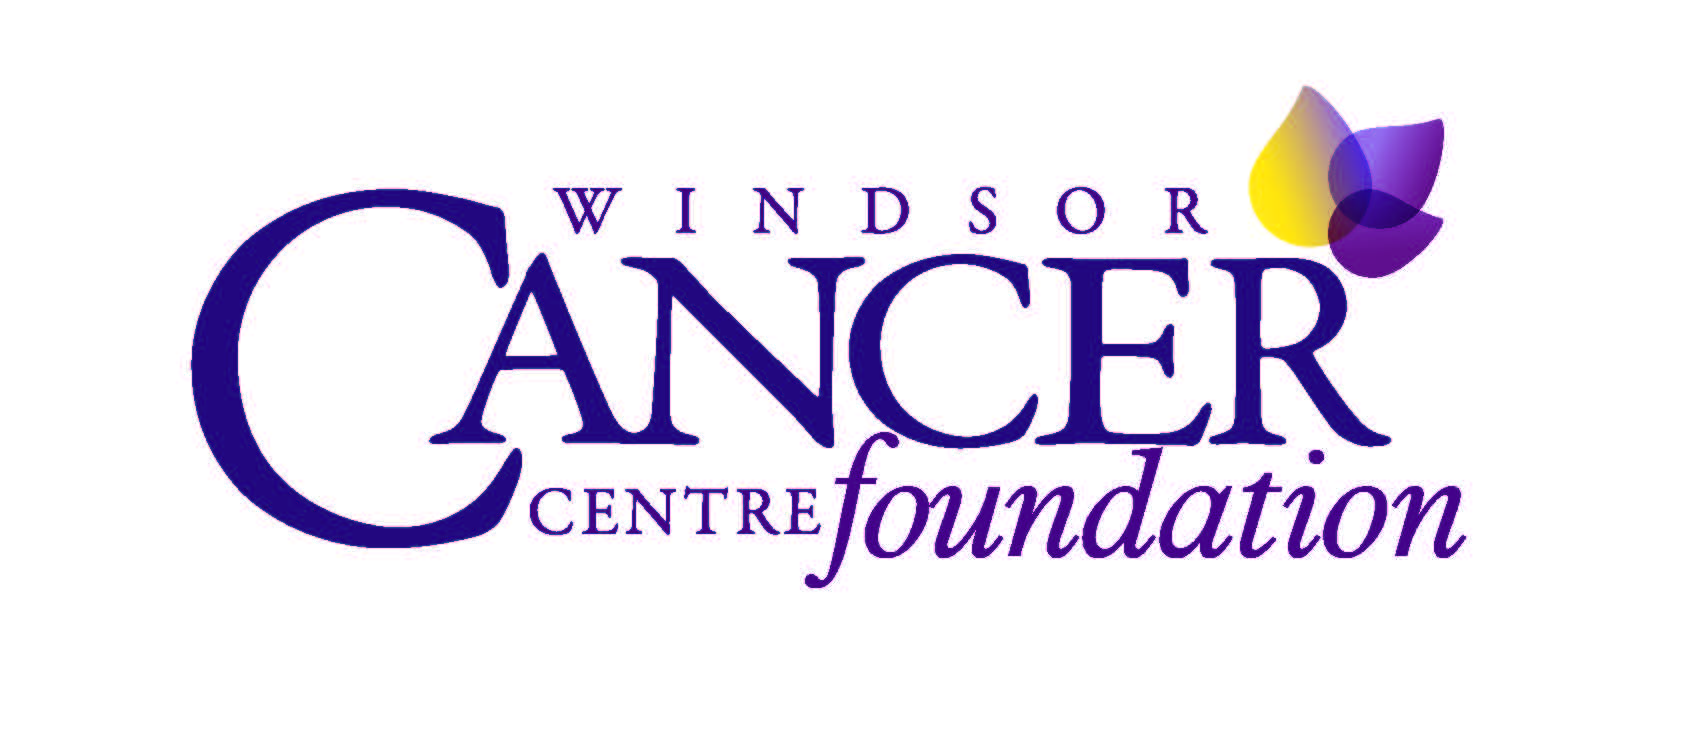 WINDSOR CANCER CENTRE FOUNDATION